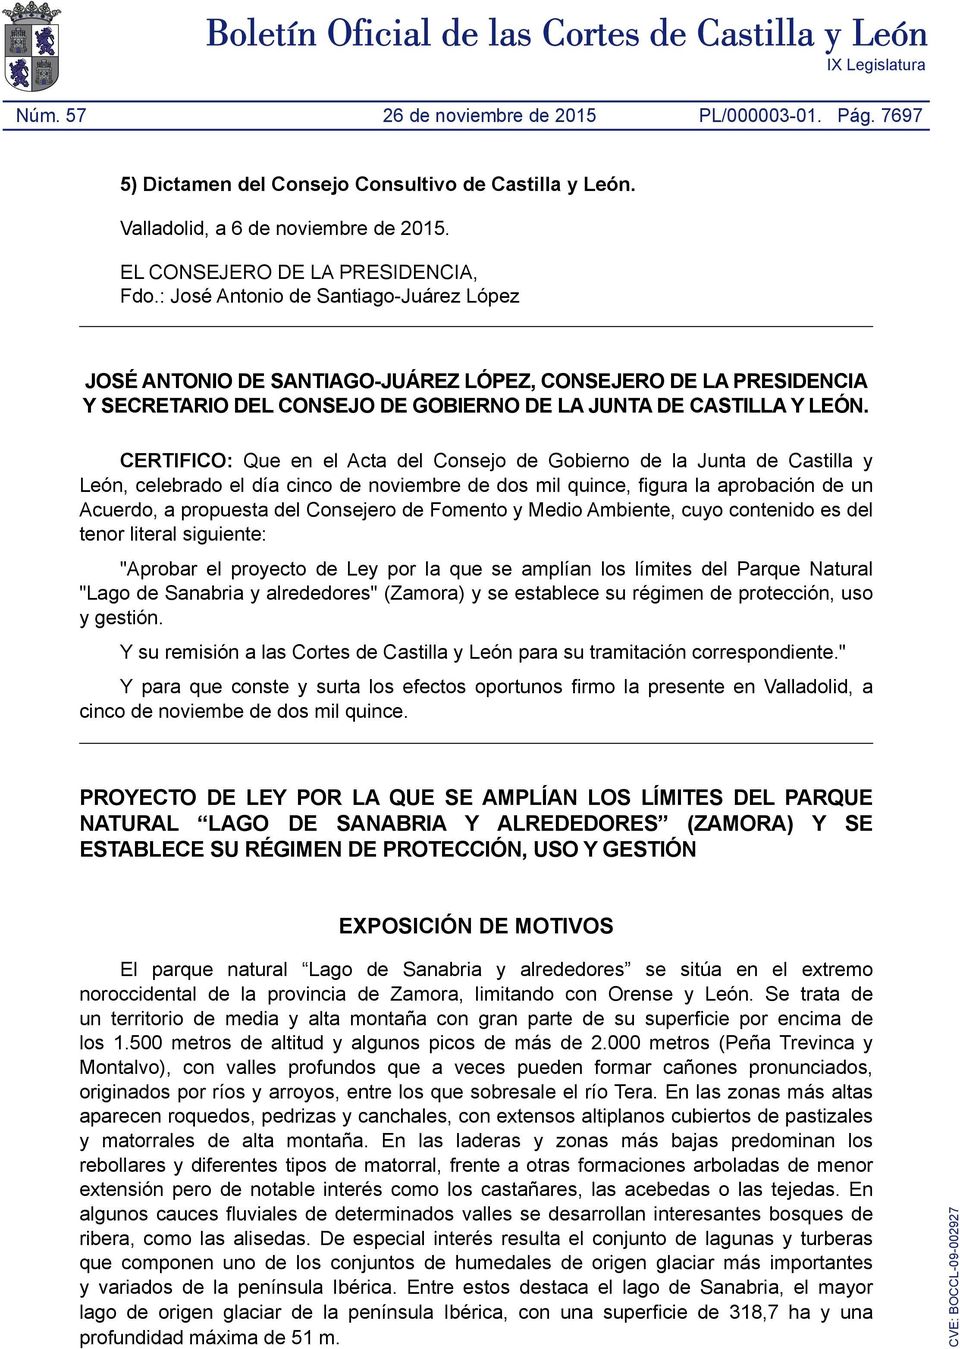 CERTIFICO: Que en el Acta del Consejo de Gobierno de la Junta de Castilla y León, celebrado el día cinco de noviembre de dos mil quince, figura la aprobación de un Acuerdo, a propuesta del Consejero